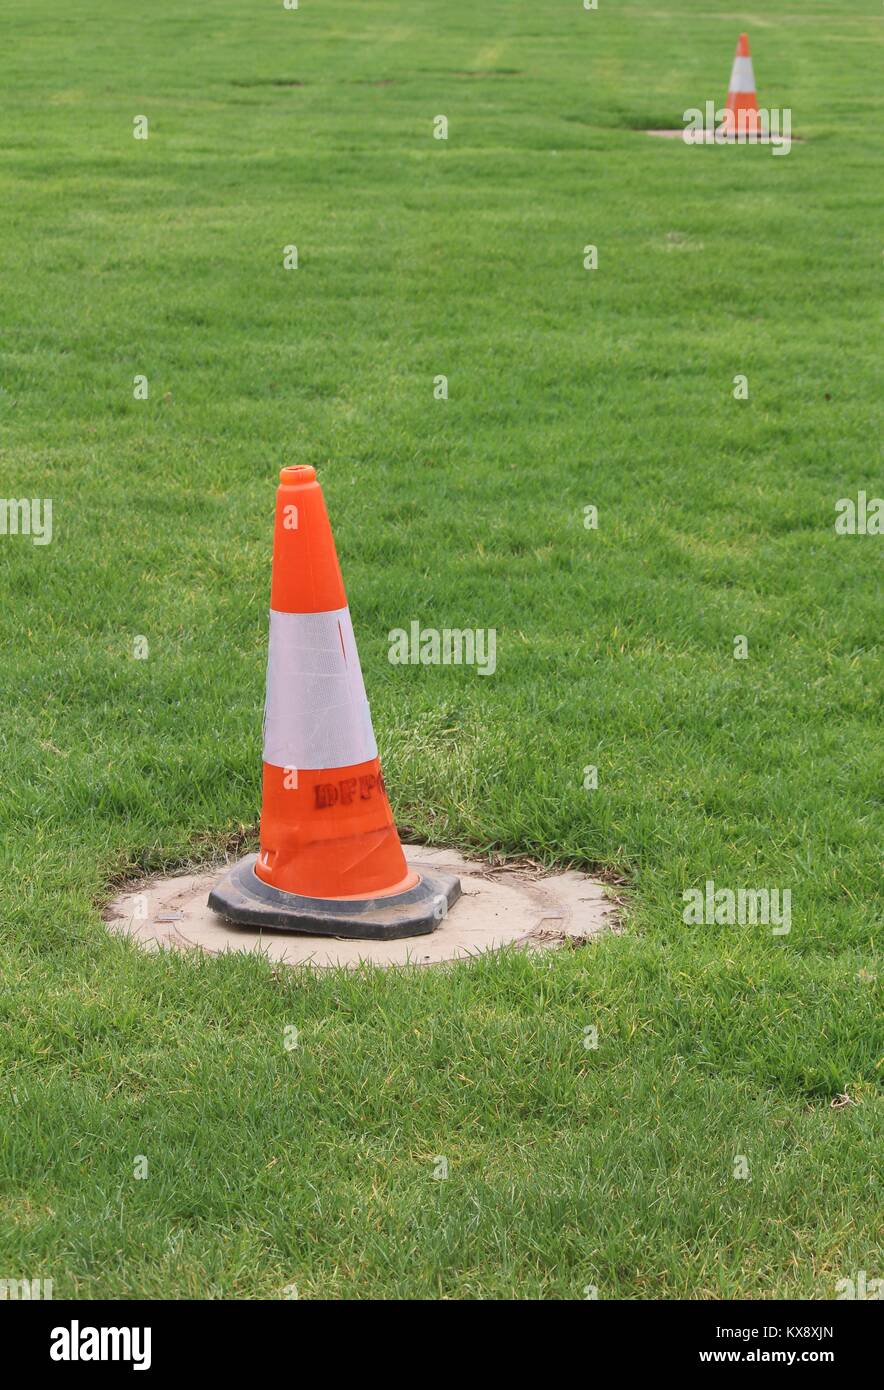 Traffic cone in grassy field Stock Photo